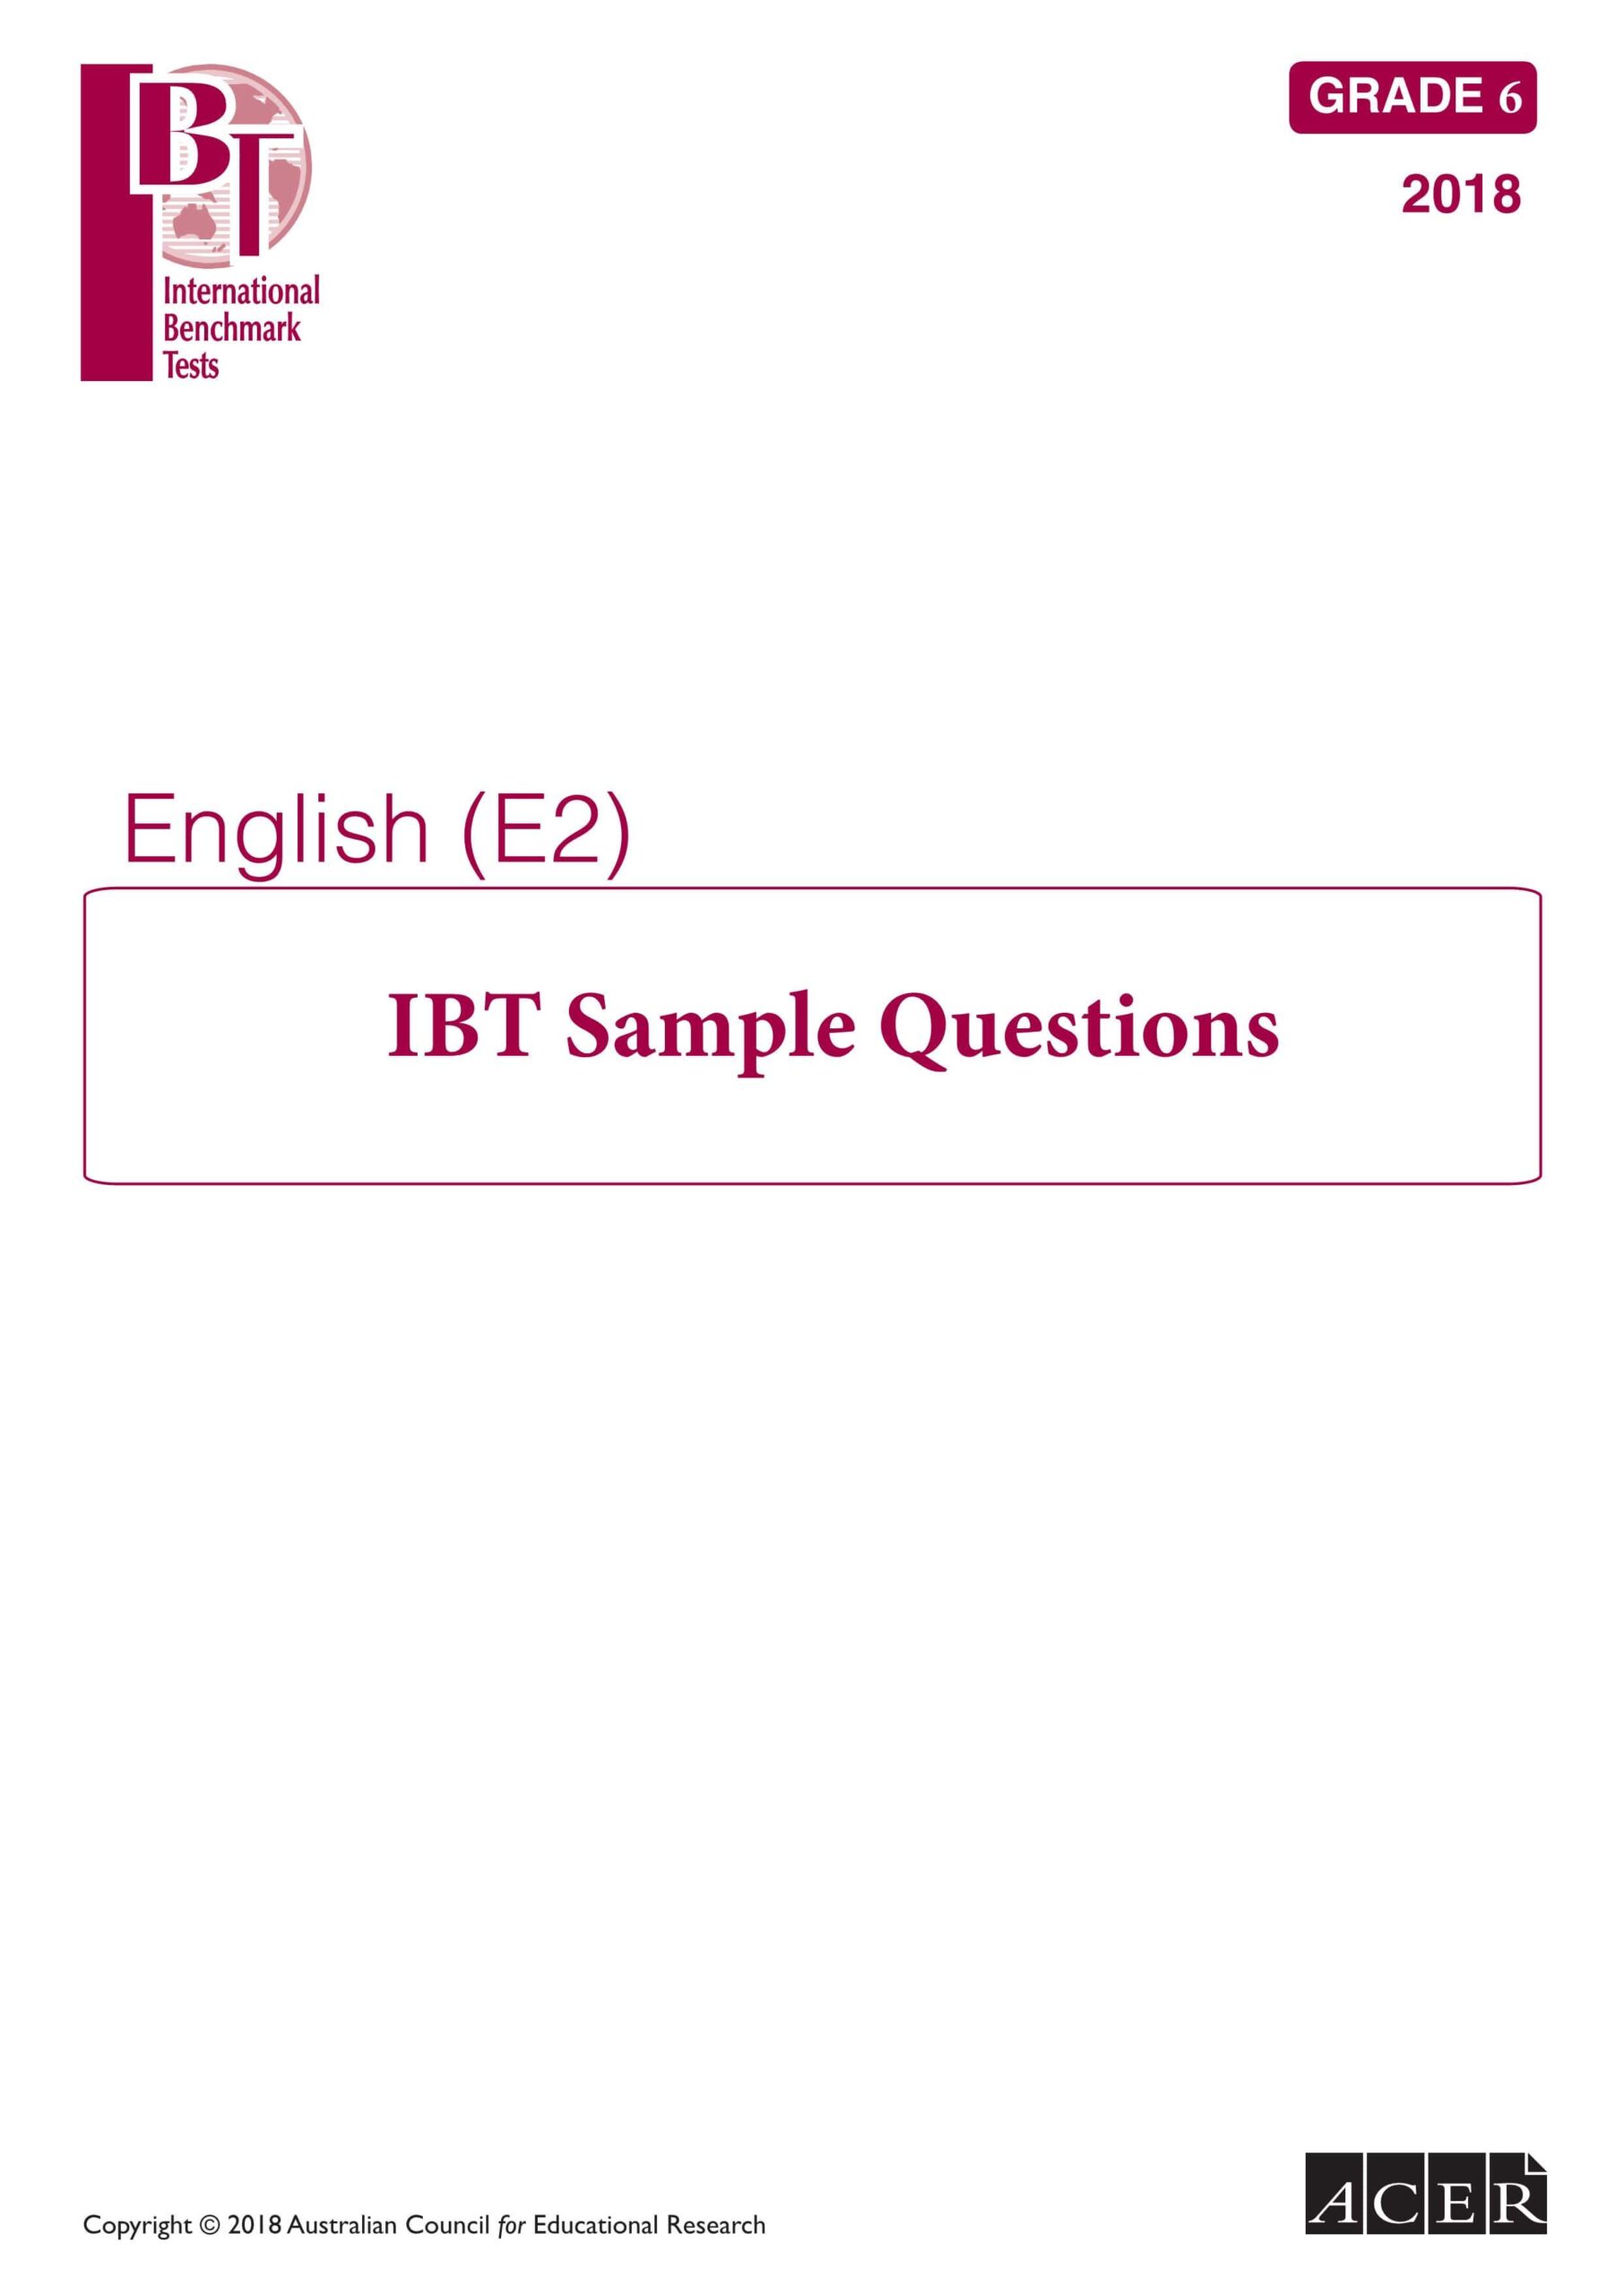 أوراق عمل IBT Sample Questions اللغة الإنجليزية الصف السادس 